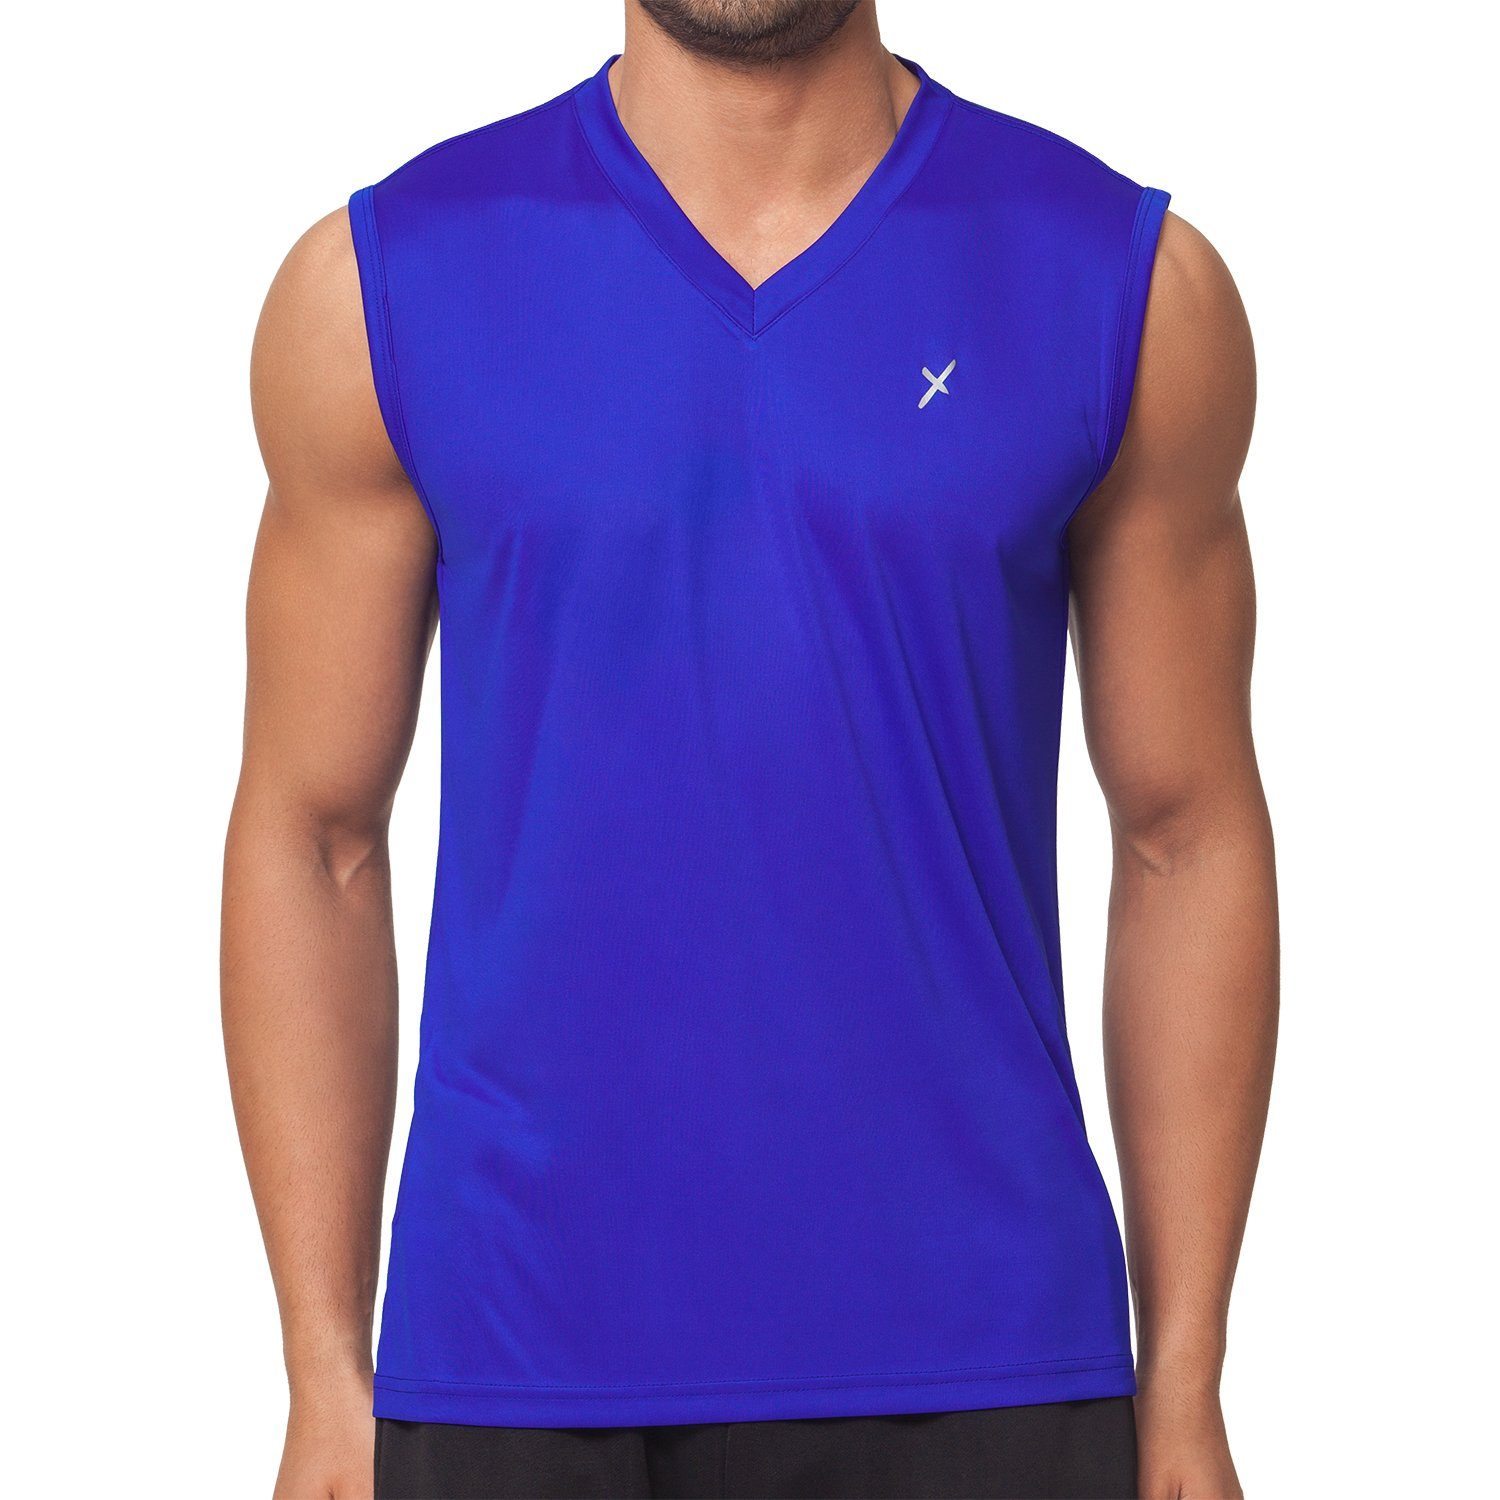 CFLEX Trainingsshirt Herren Sport Shirt Fitness Muscle-Shirt Sportswear Collection Royalblau